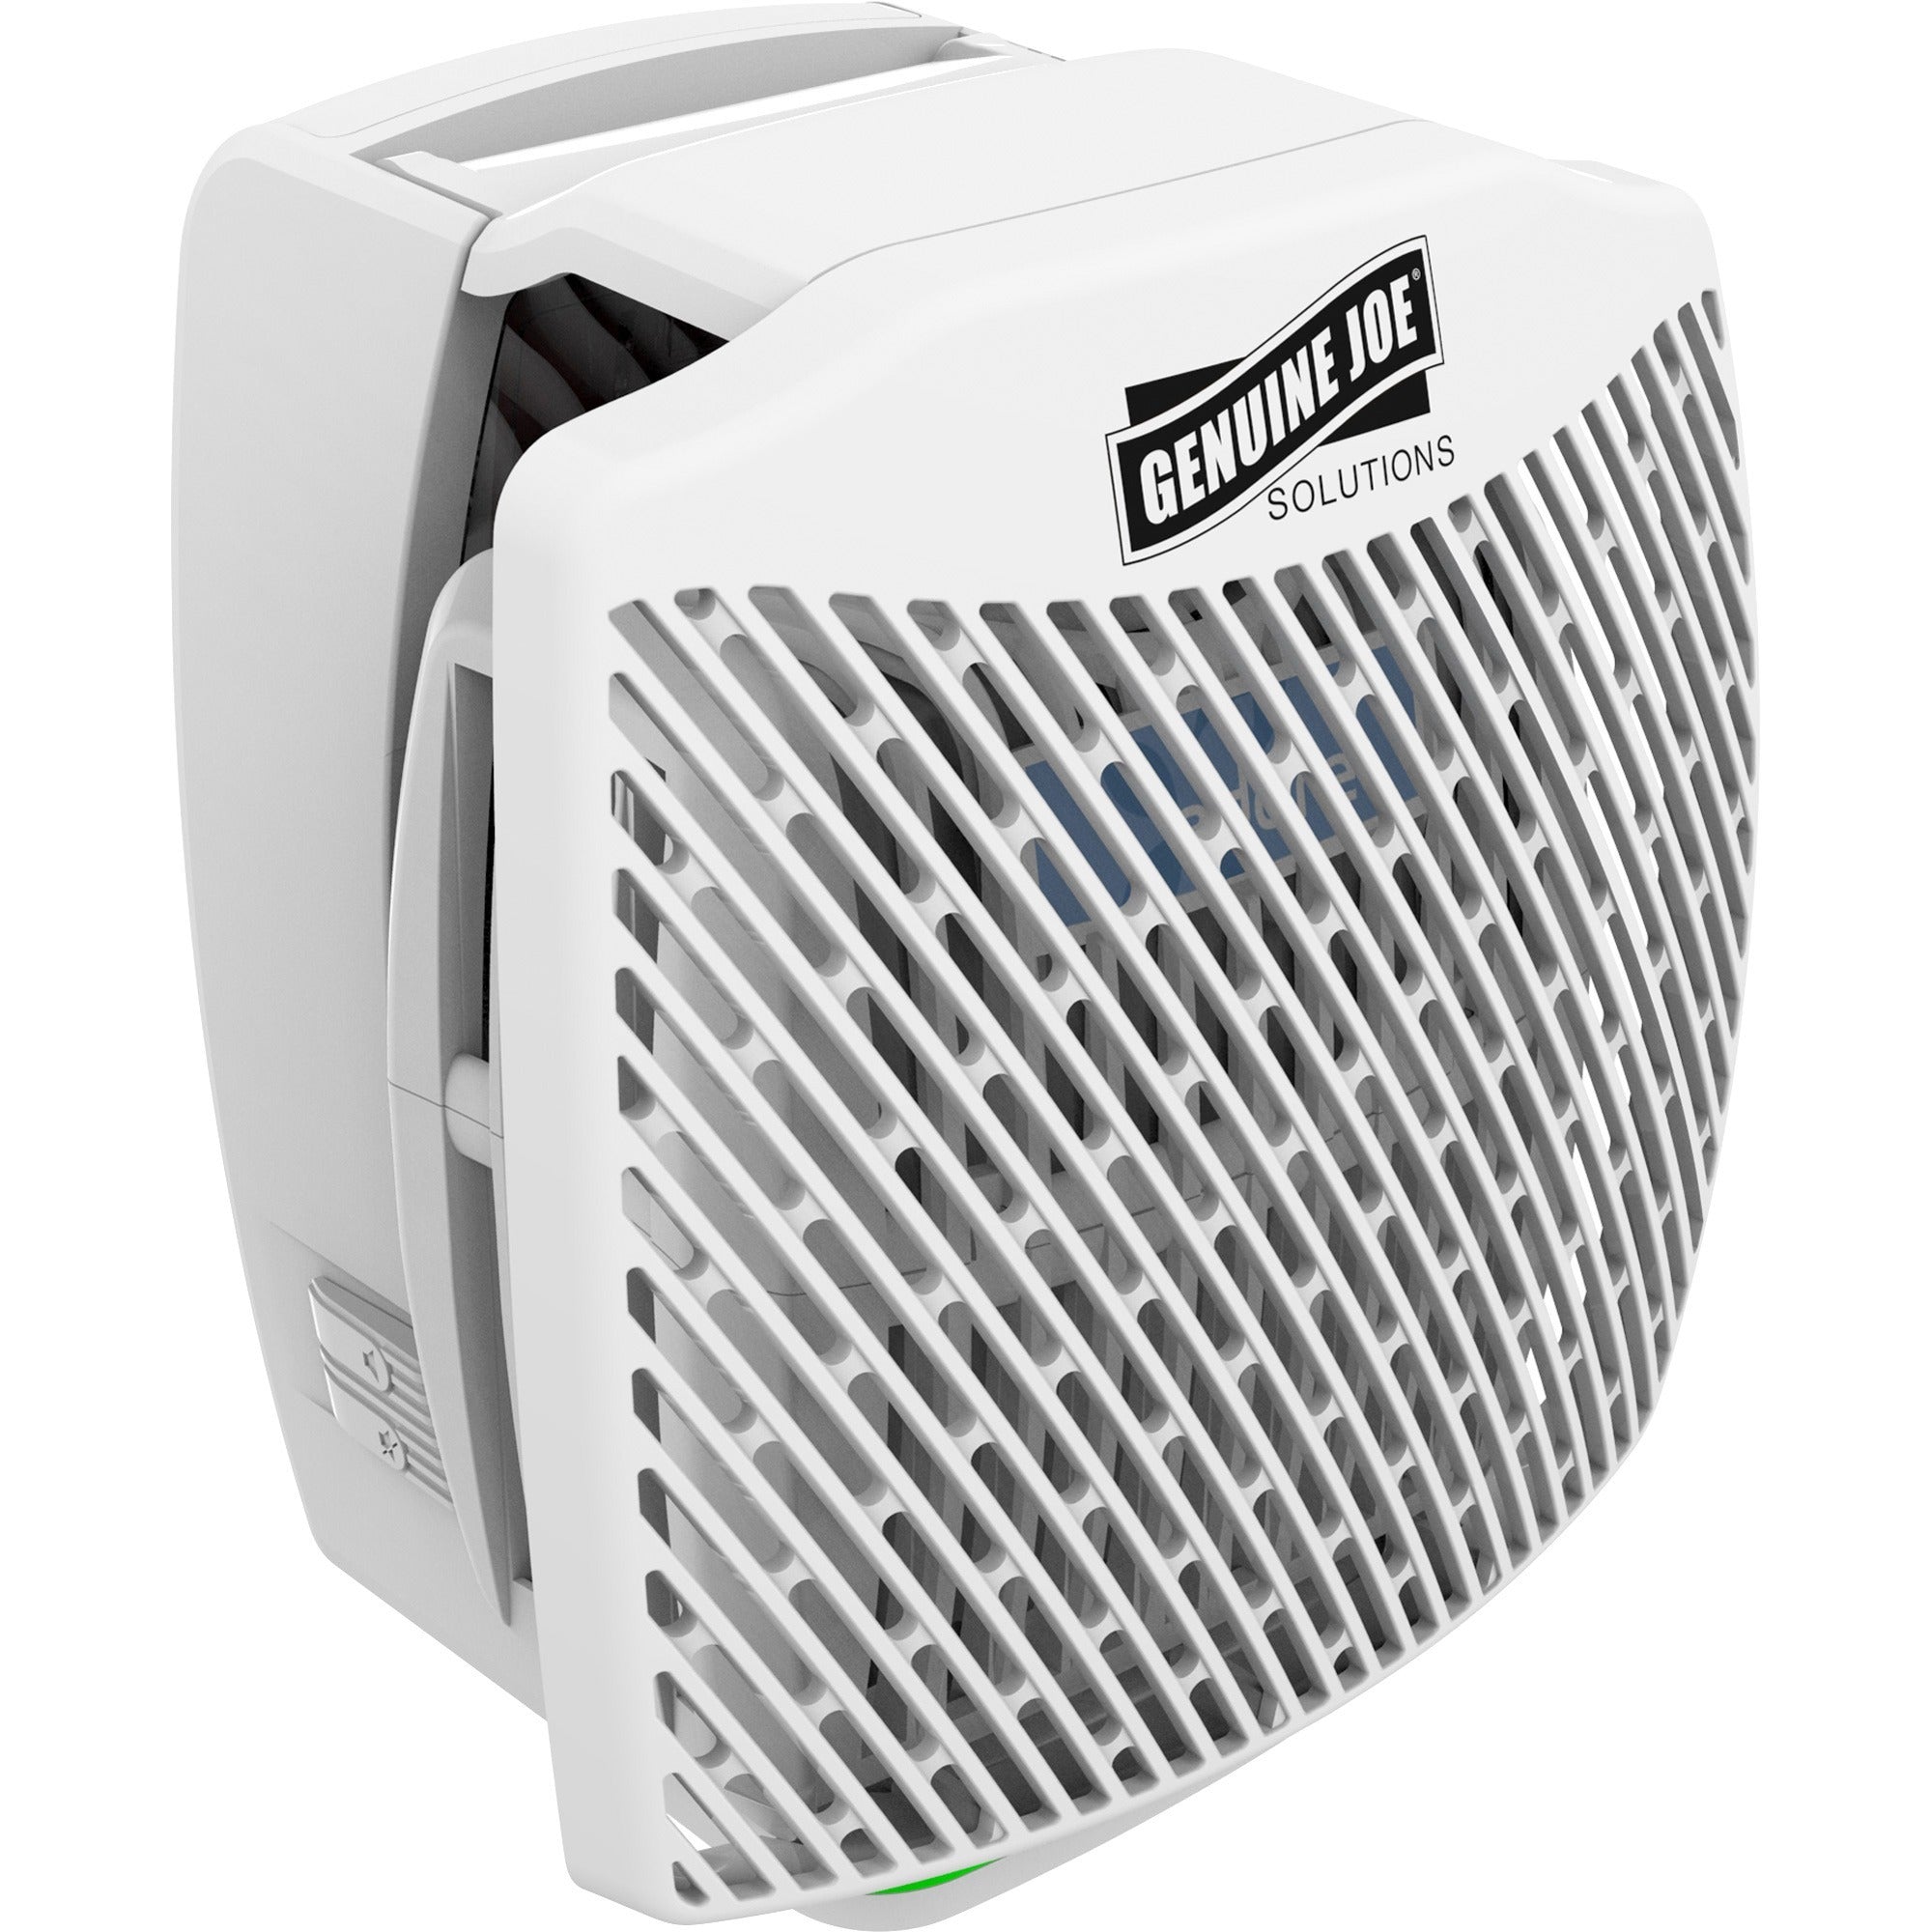 Genuine Joe Air Freshener Dispenser System - 30 Day Refill Life - 6000 ft Coverage - 1 Each - White - 1